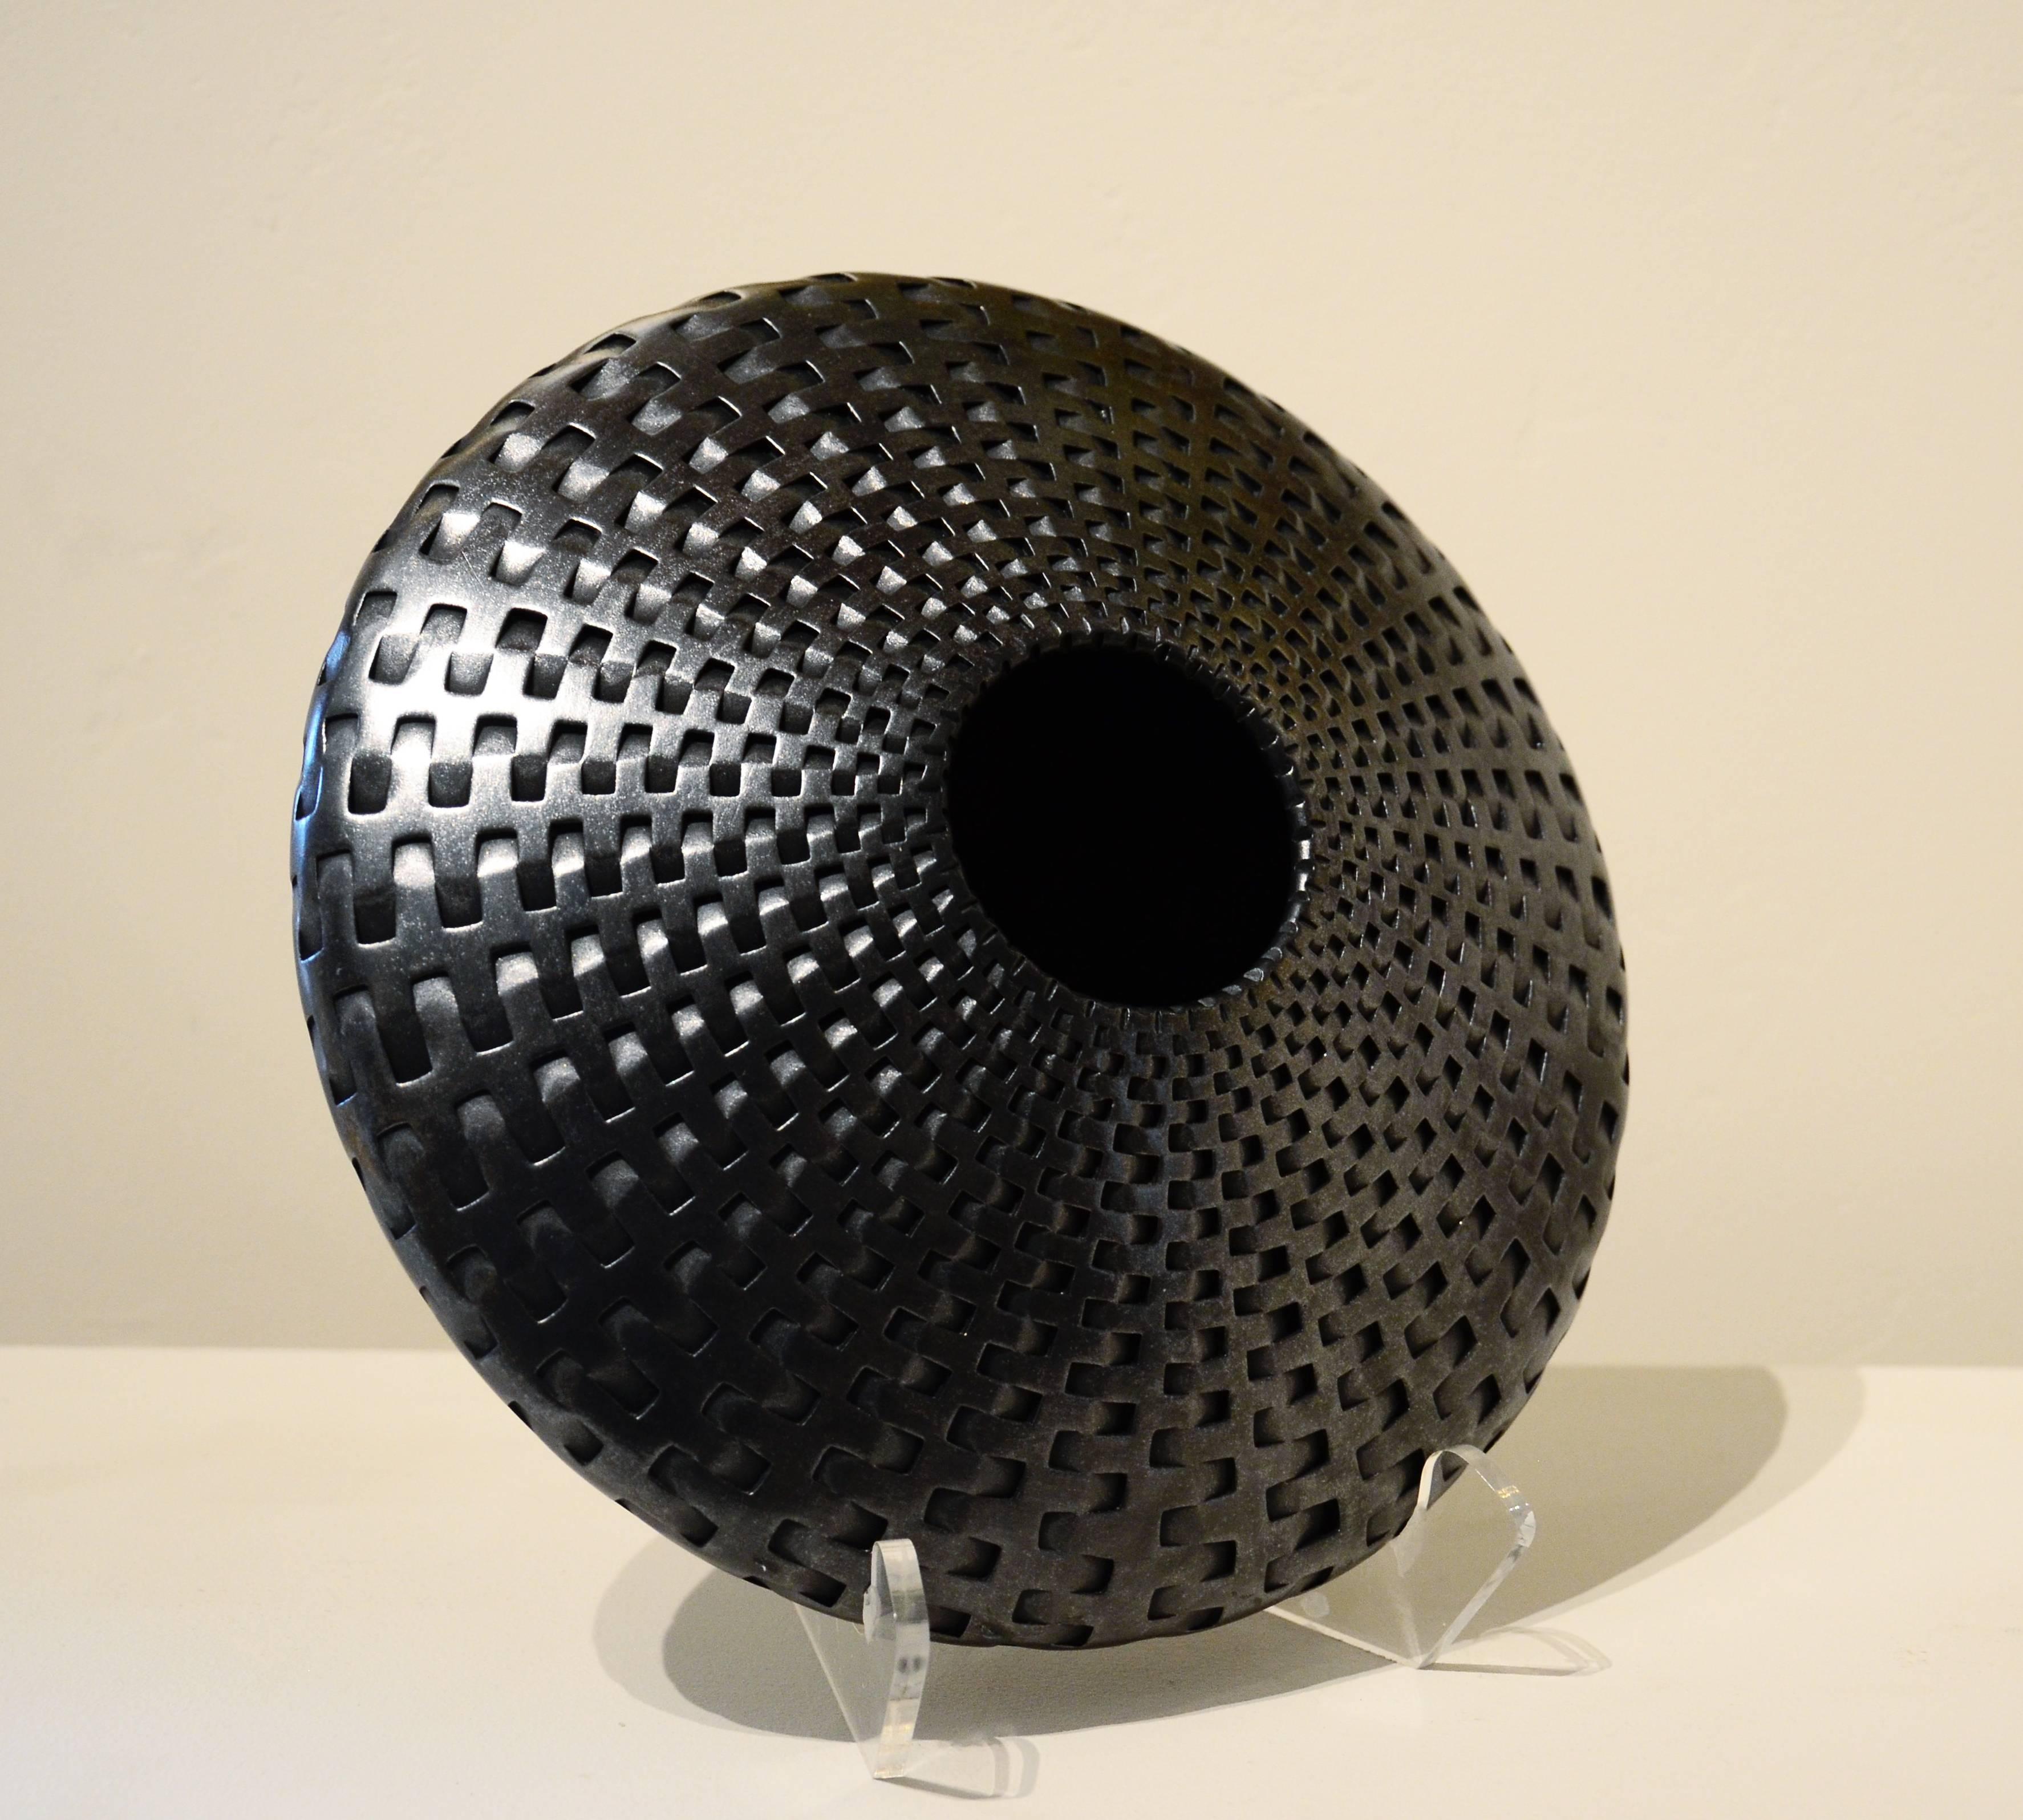 Michael Wisner Abstract Sculpture - Metallic Ratan